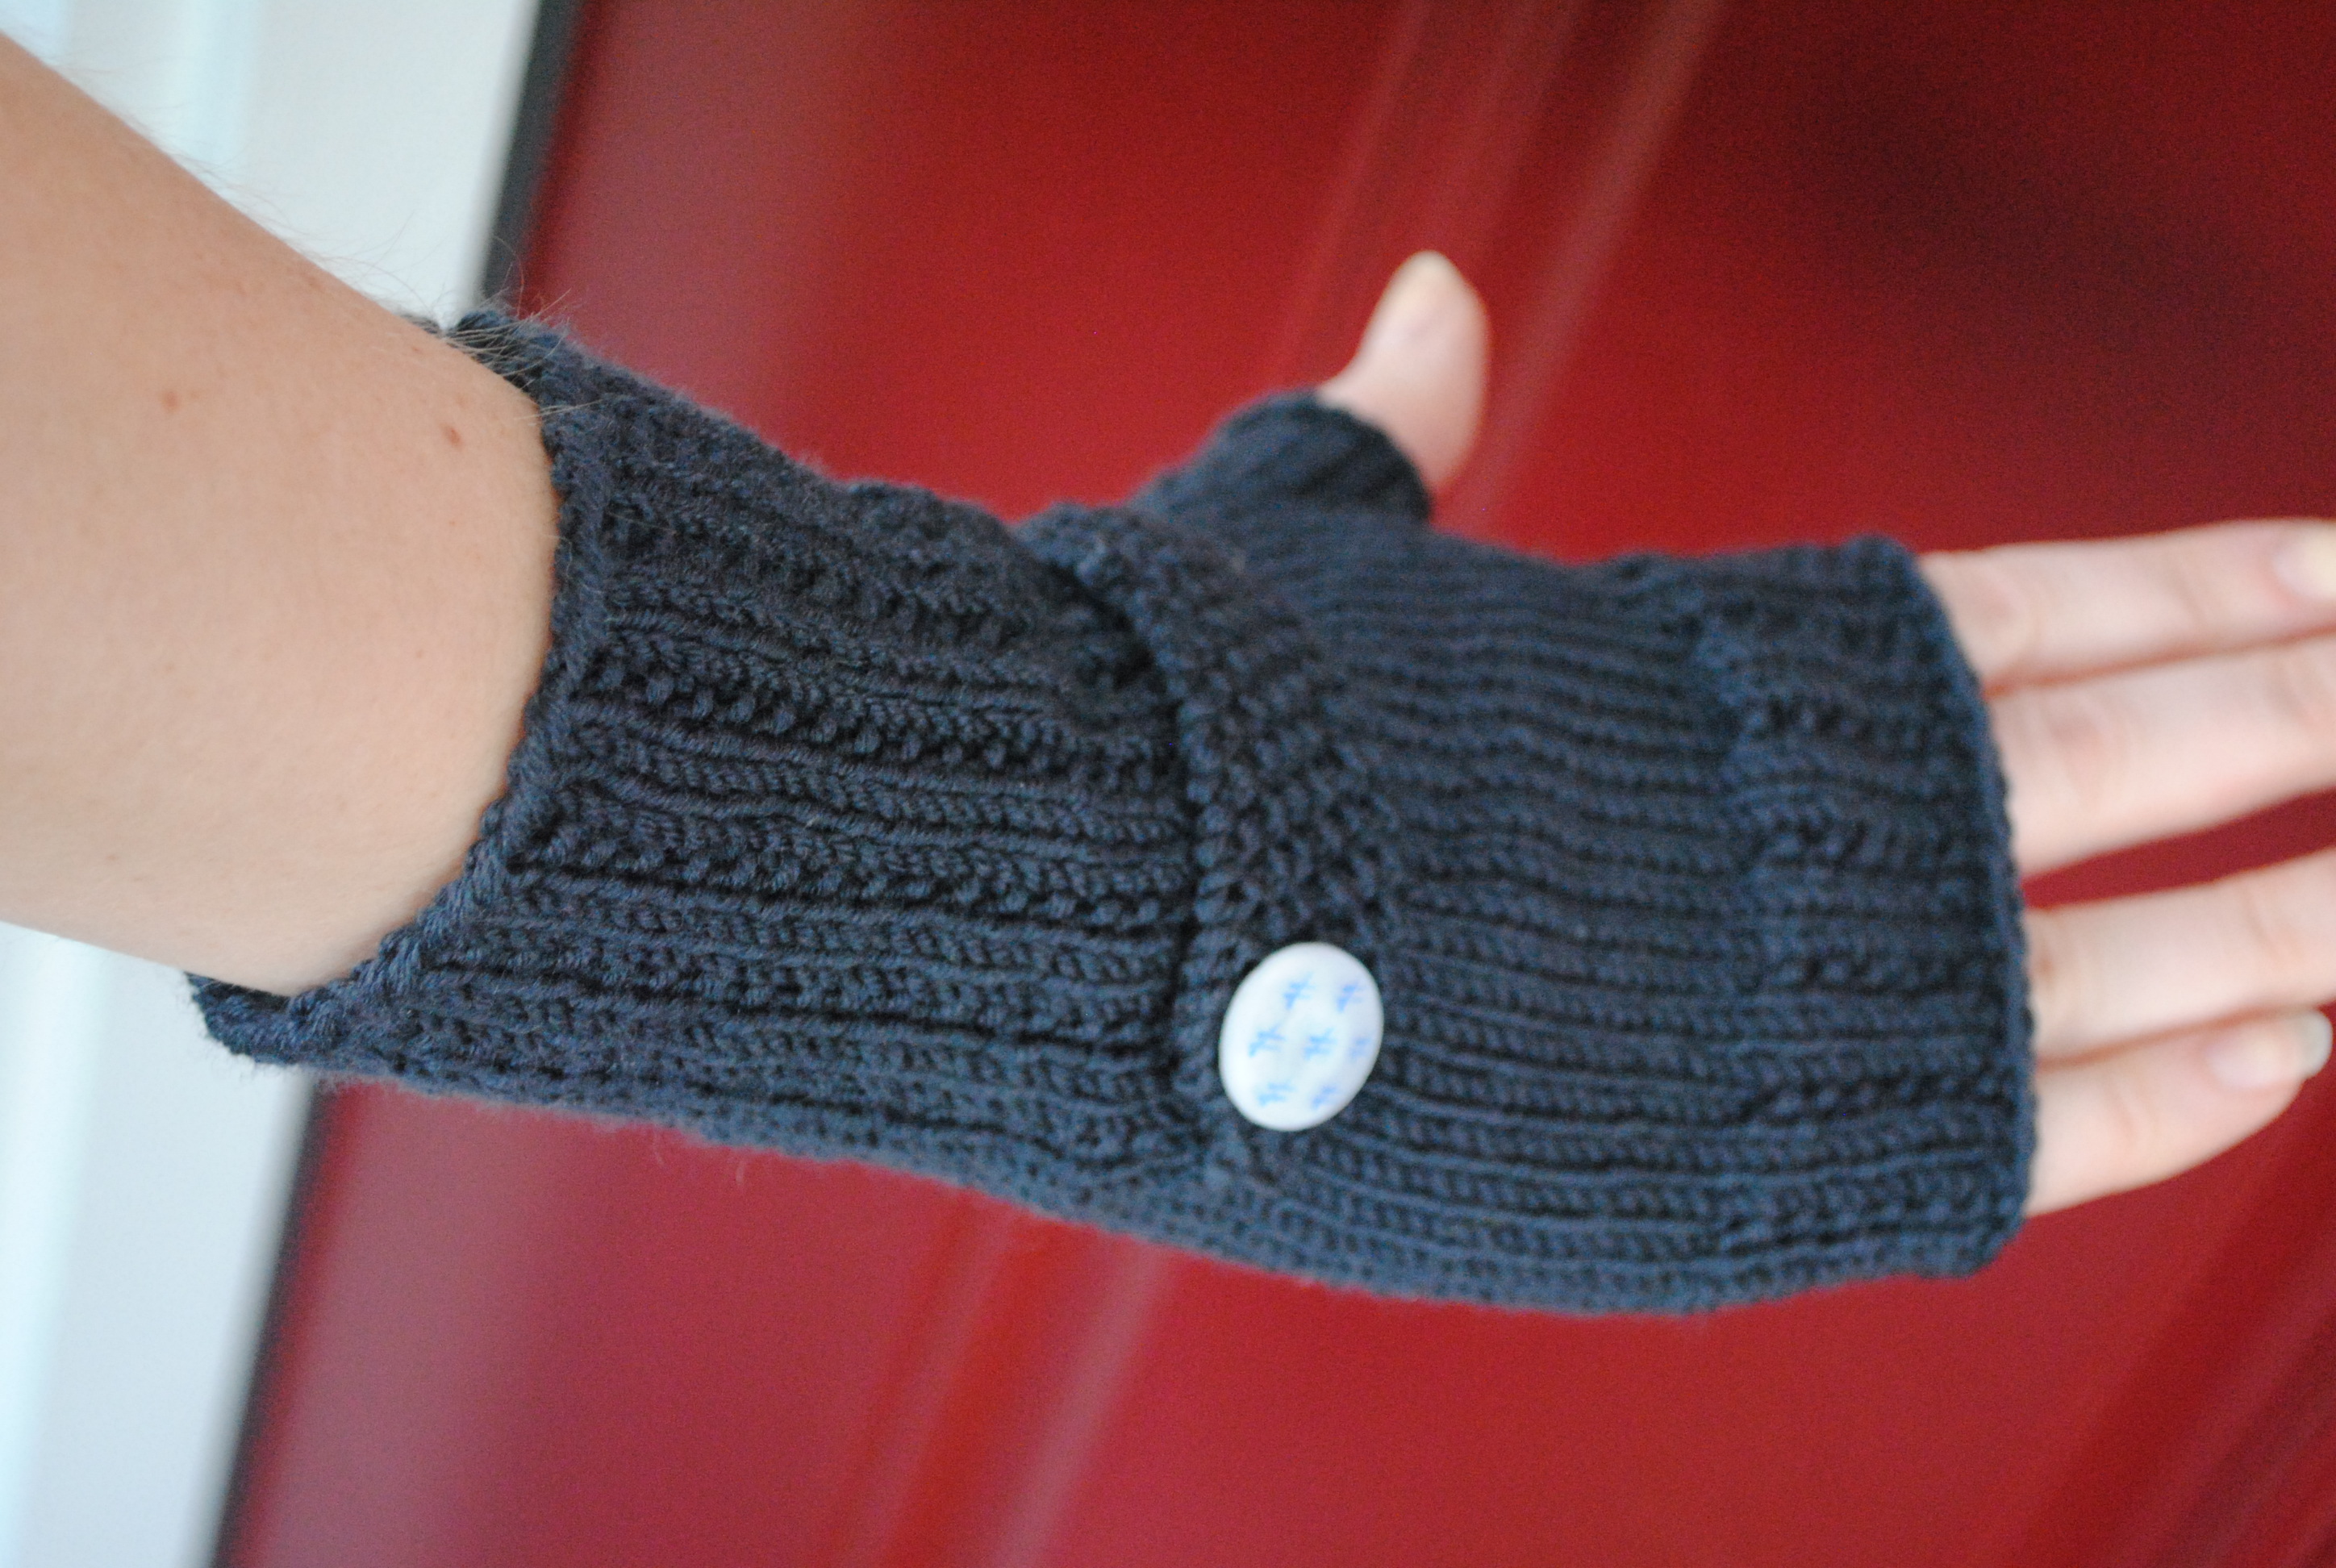 gloves knitting pattern free